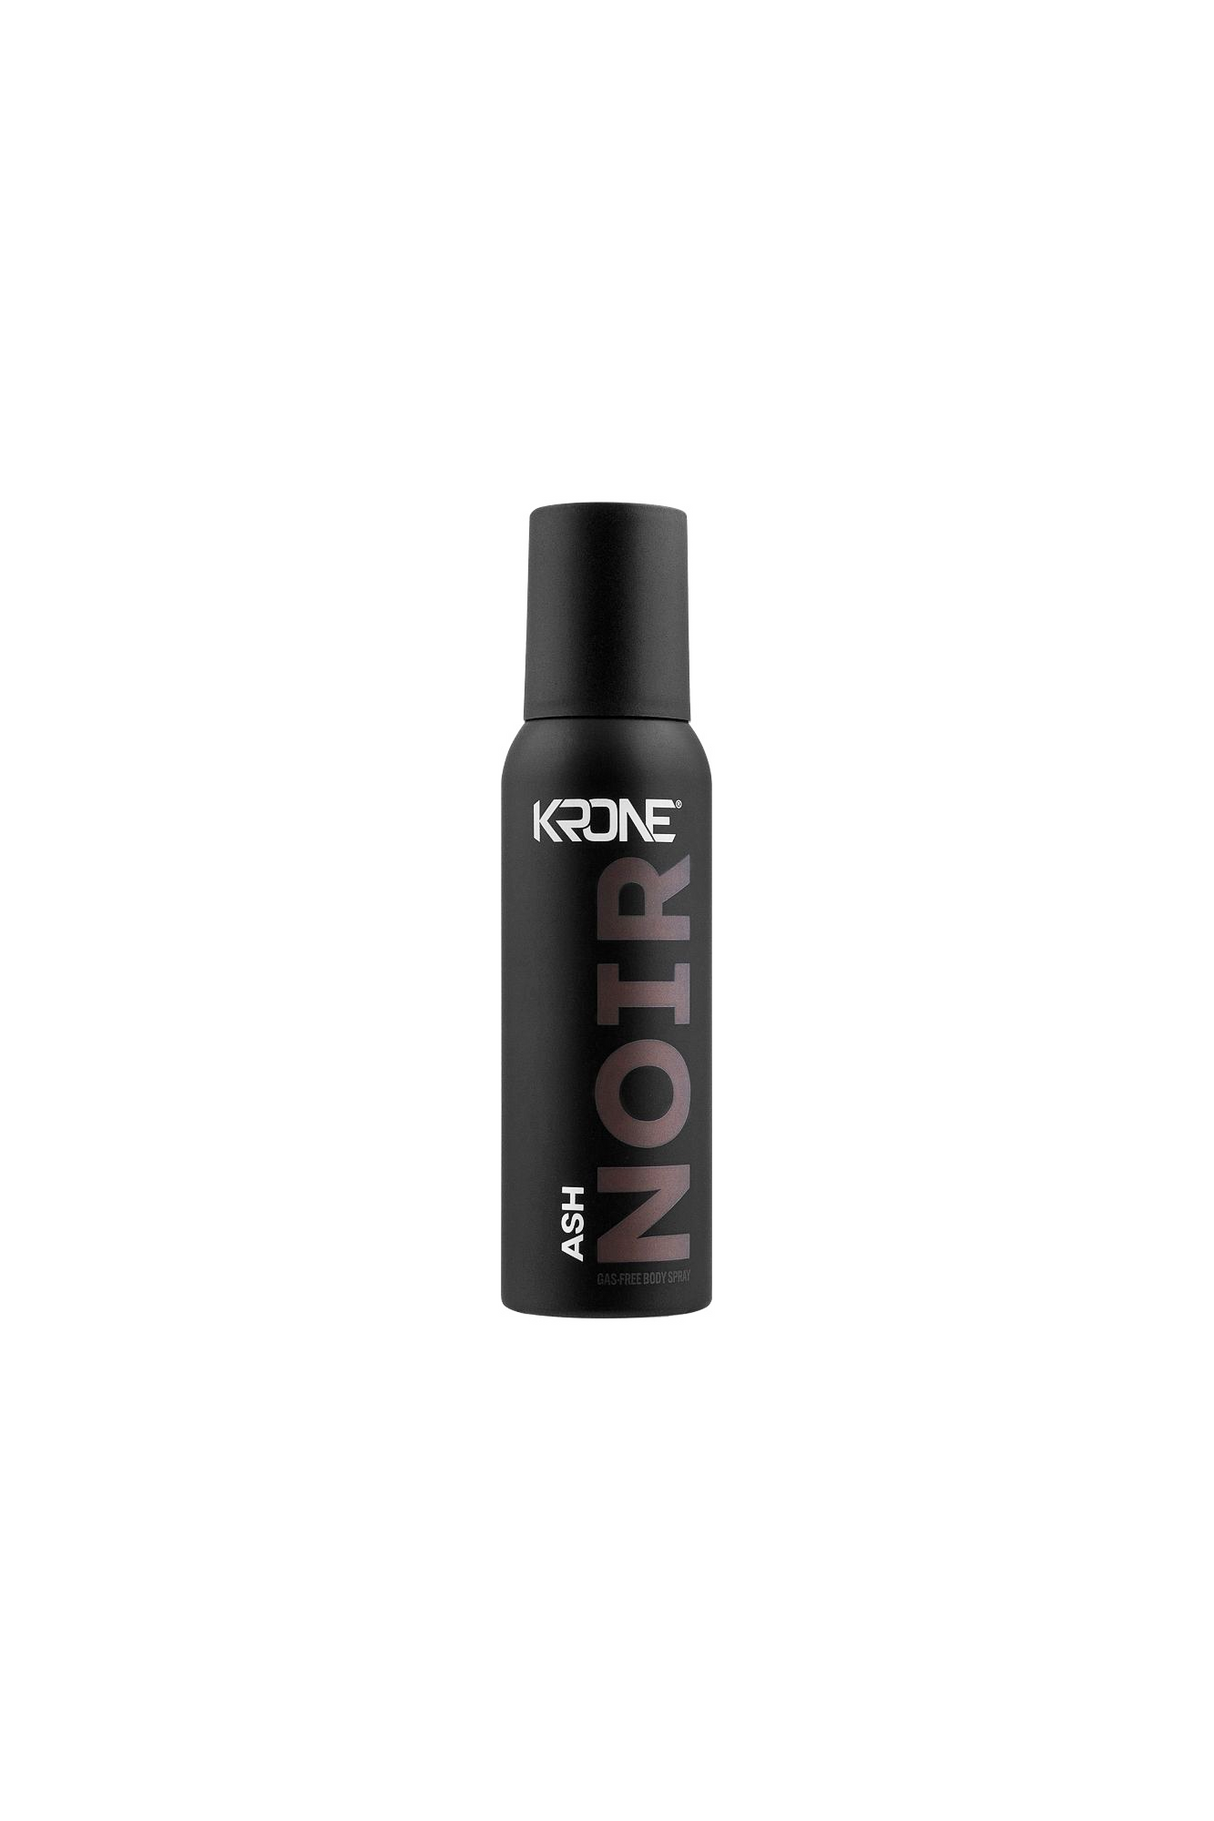 krone ash deodorant body spray 120ml